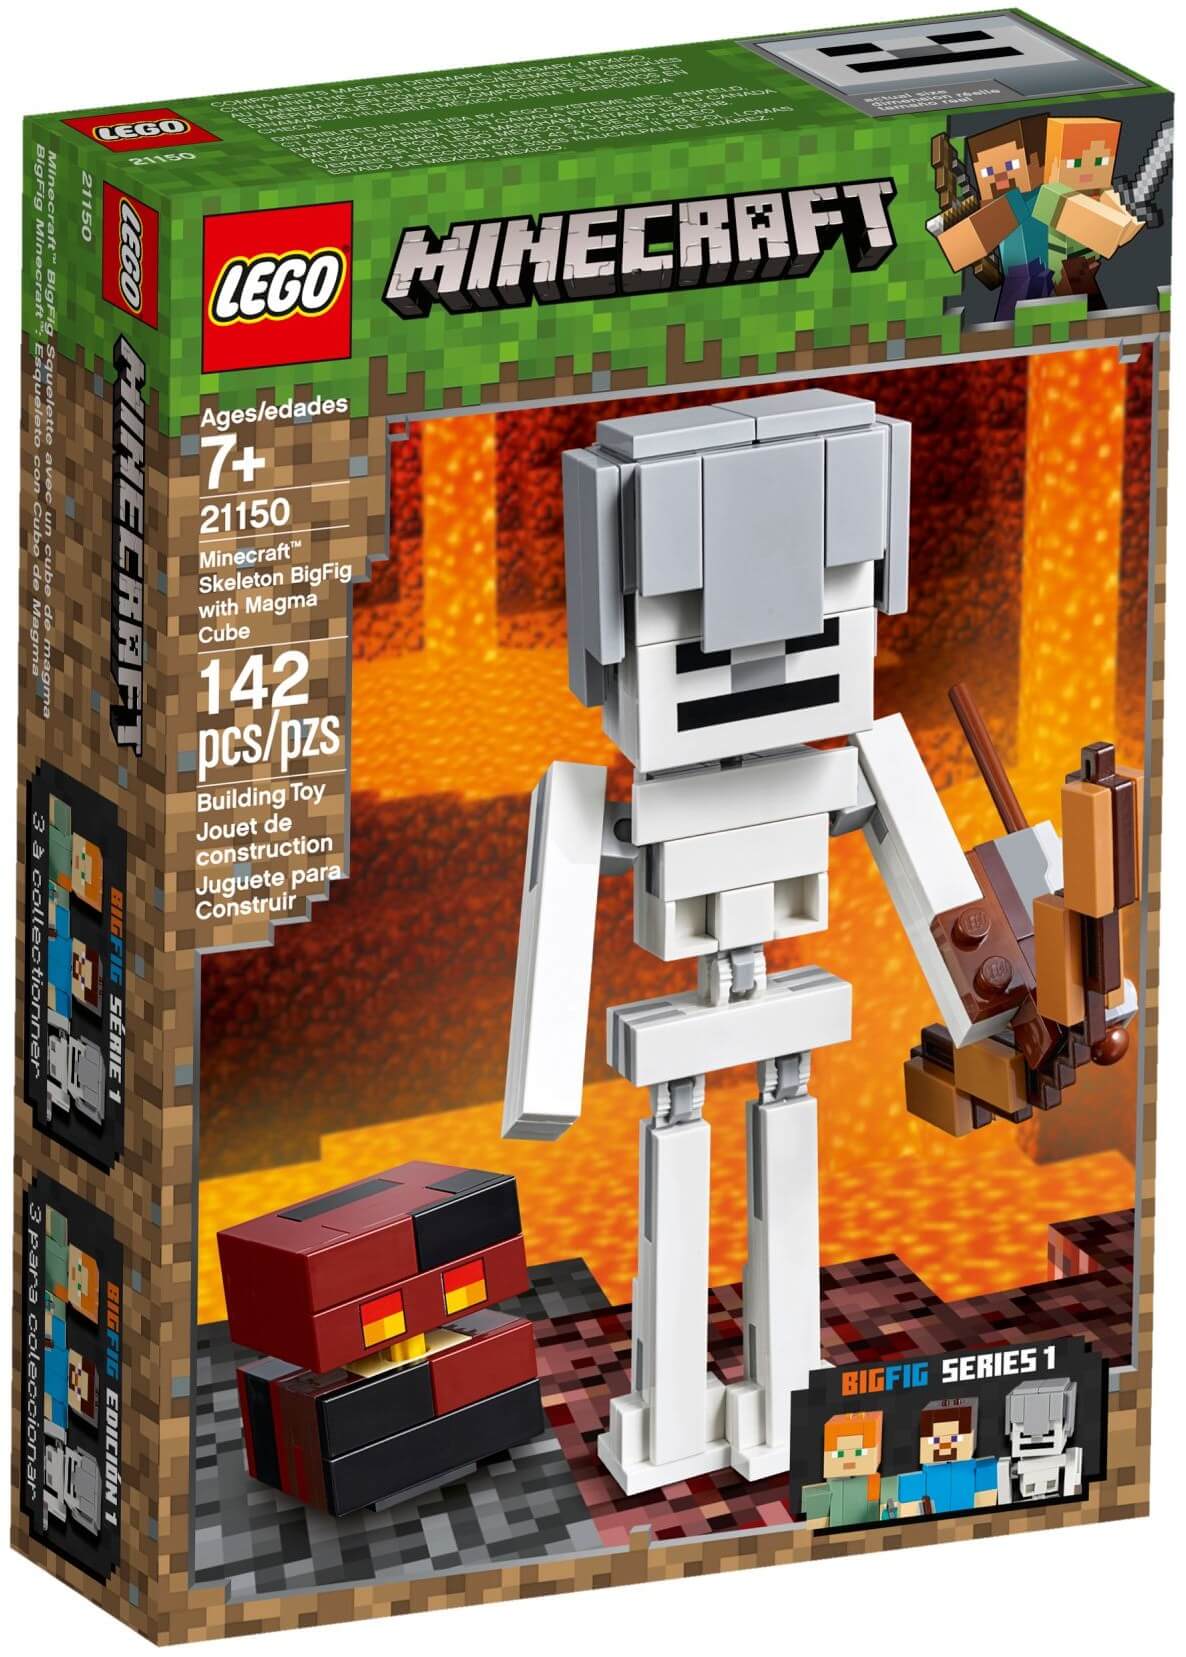 Đồ Chơi Xếp Hình LEGO Minecraft 21127 Lắp Ráp SIÊU PHÁO ĐÀI  Lego Speed  Build Review  YouTube